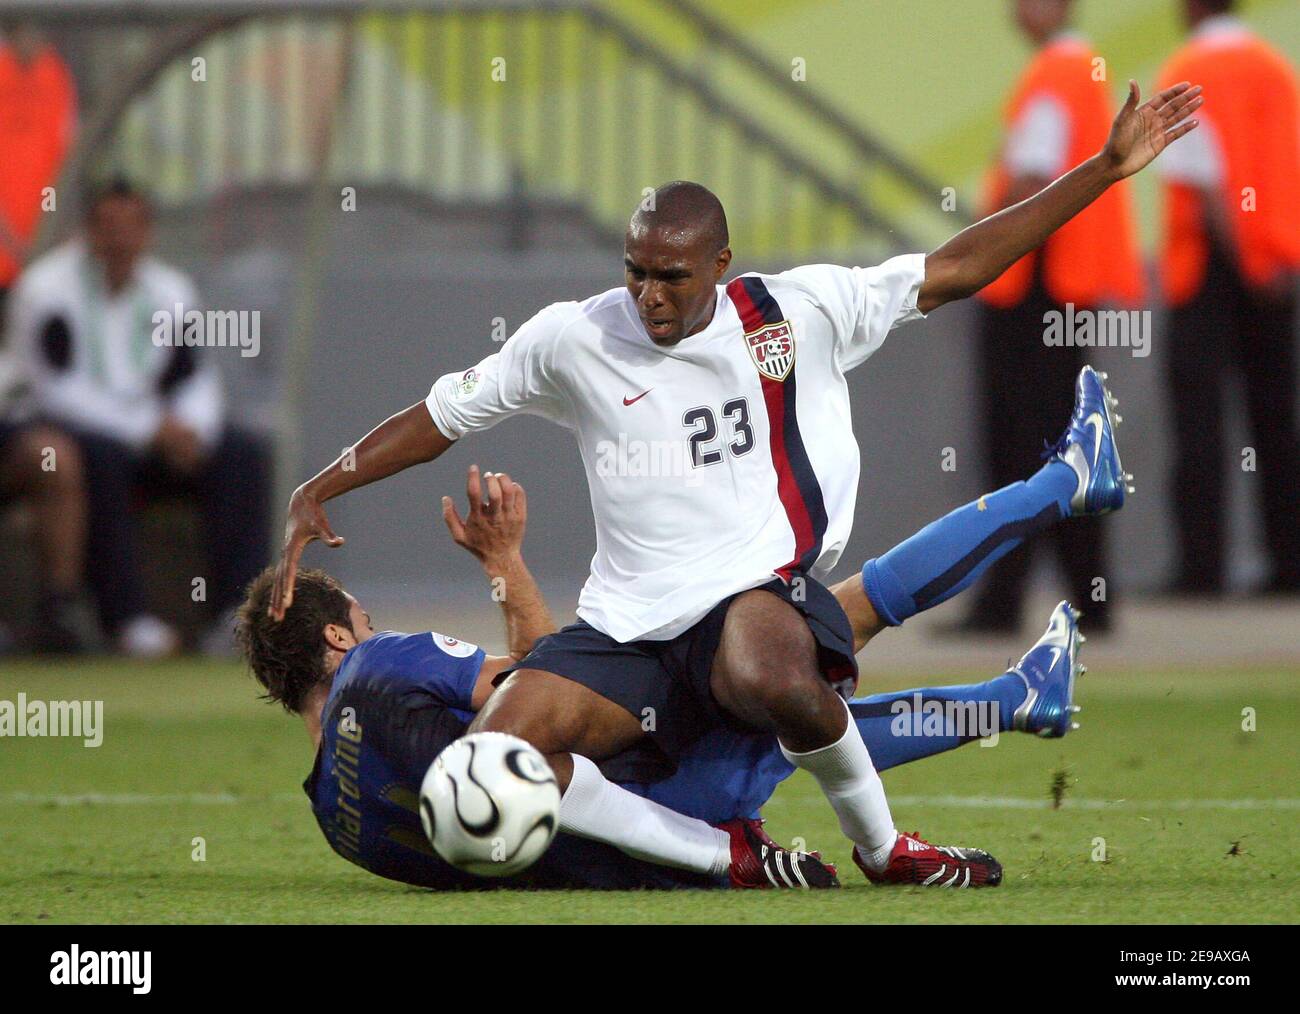 Eddie Pope - FIFA World Cup 2006 - U.S.A.